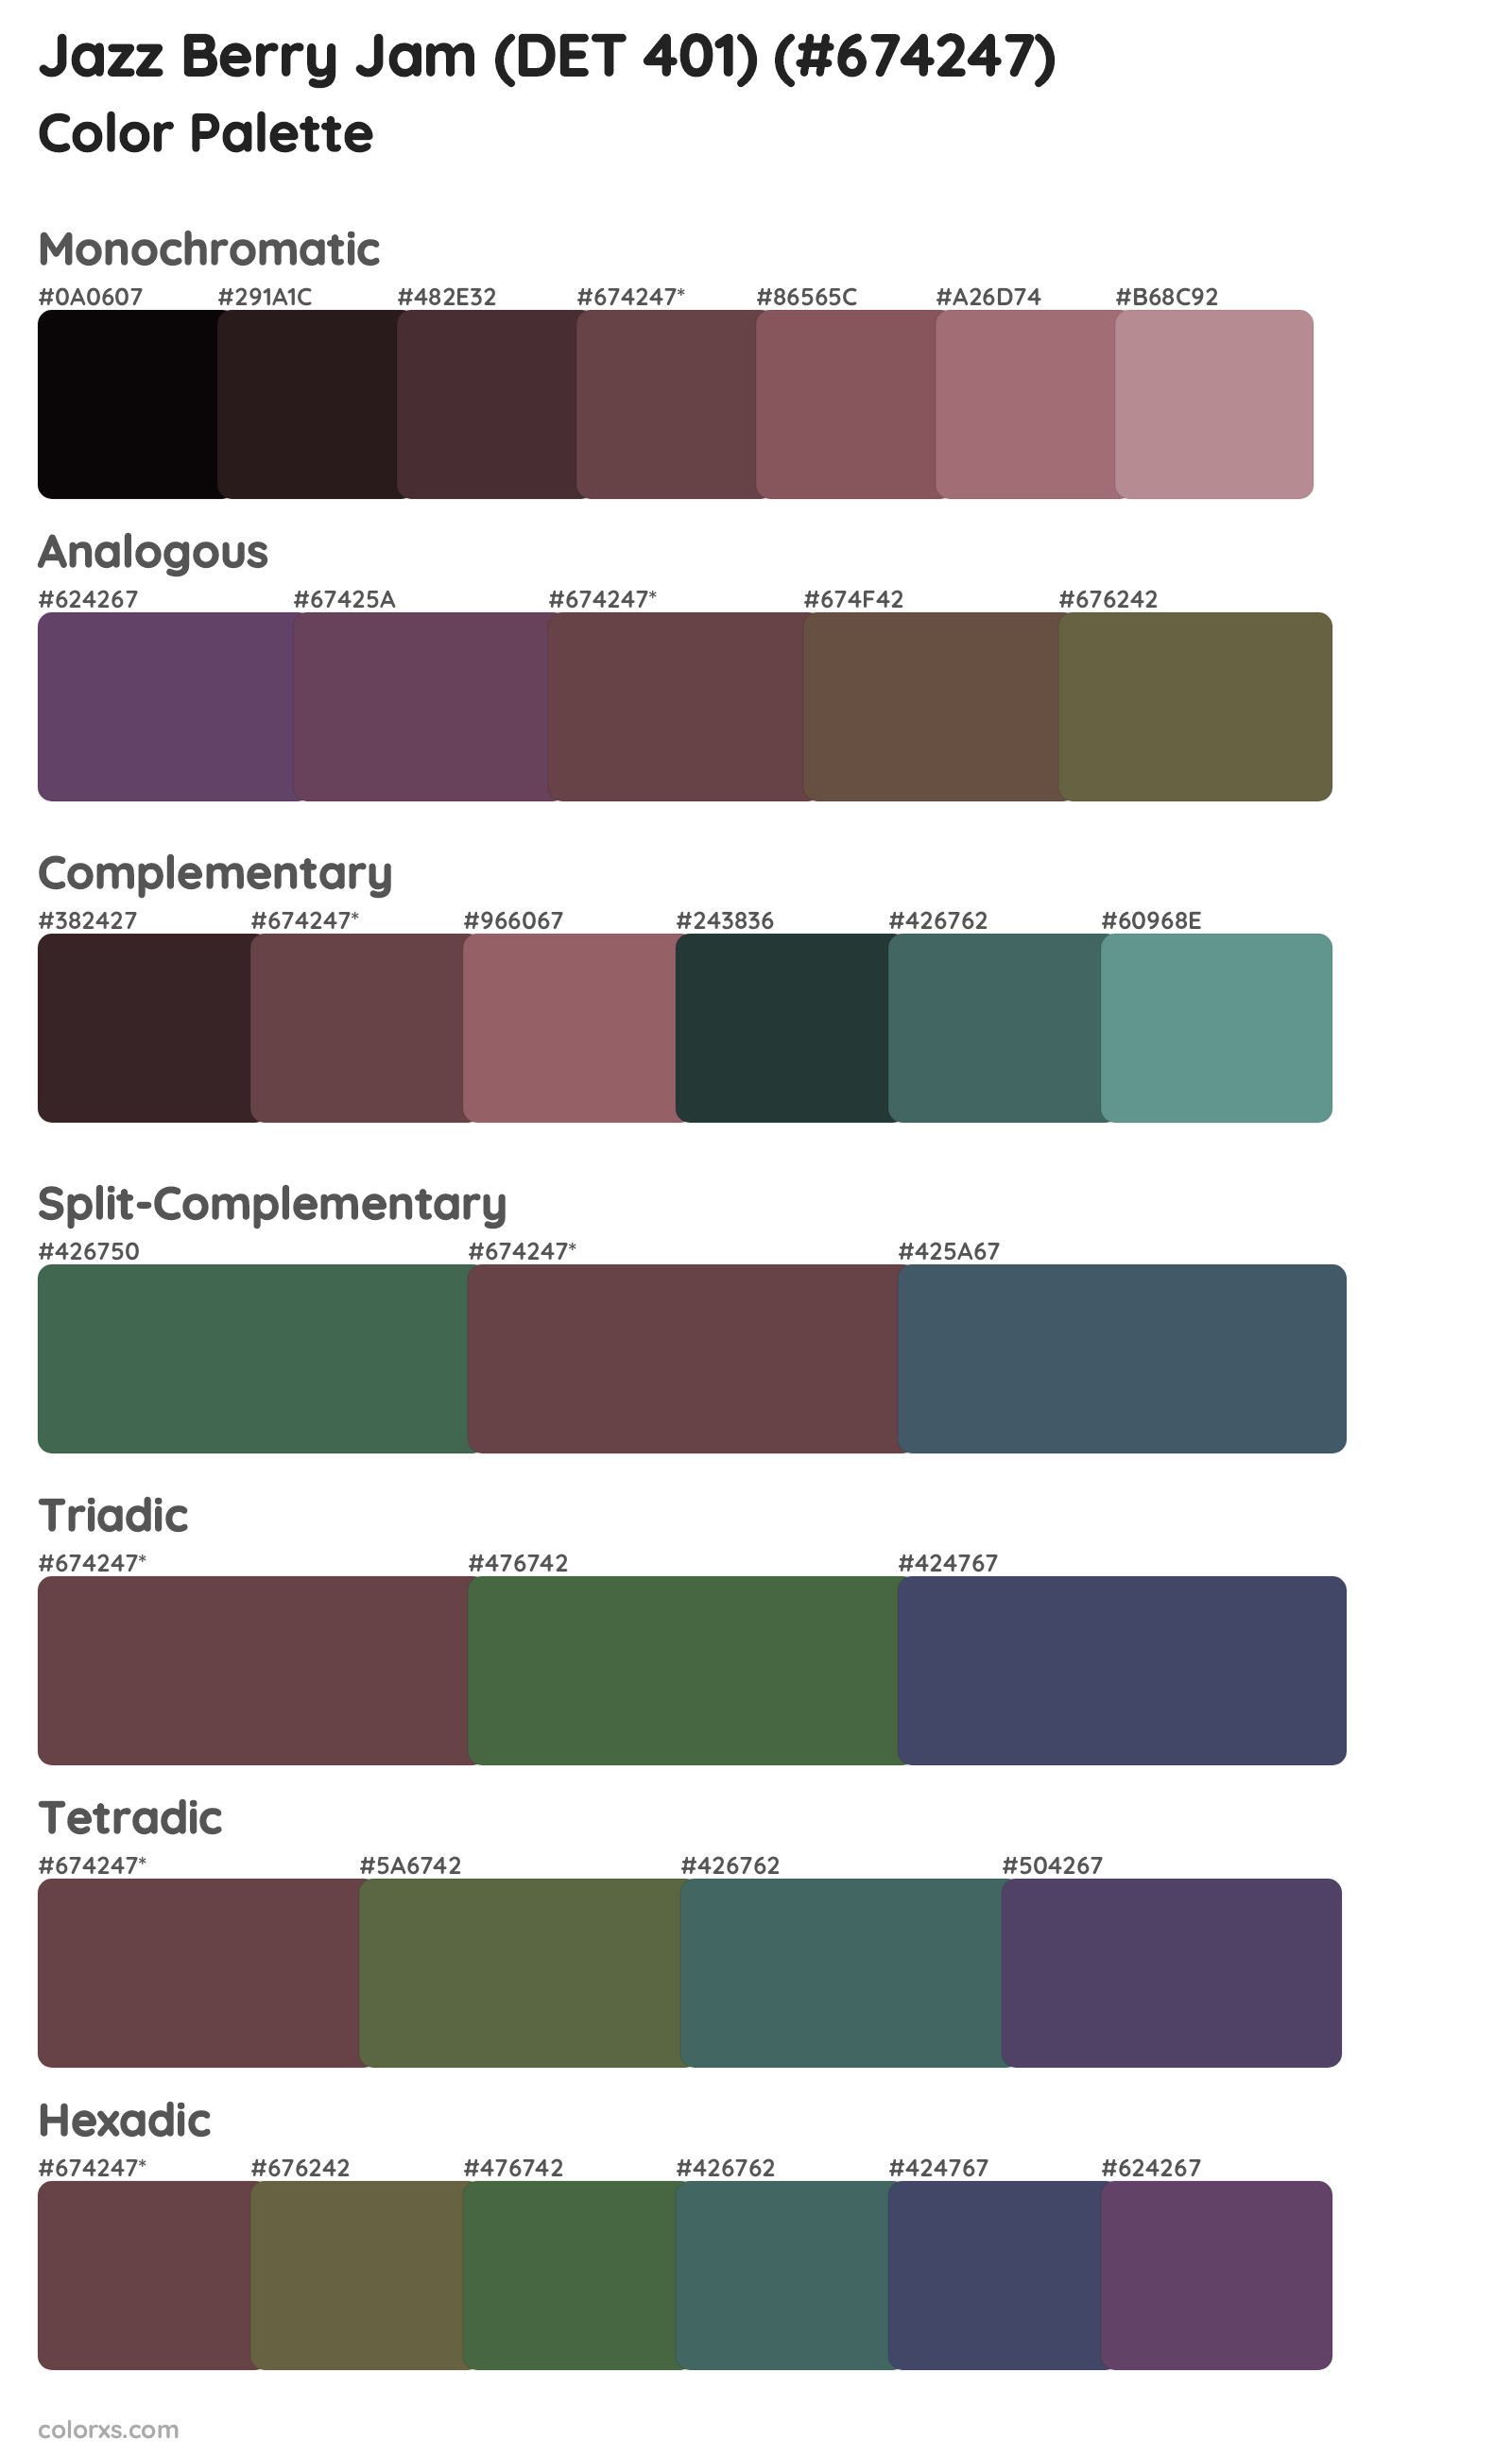 Jazz Berry Jam (DET 401) Color Scheme Palettes